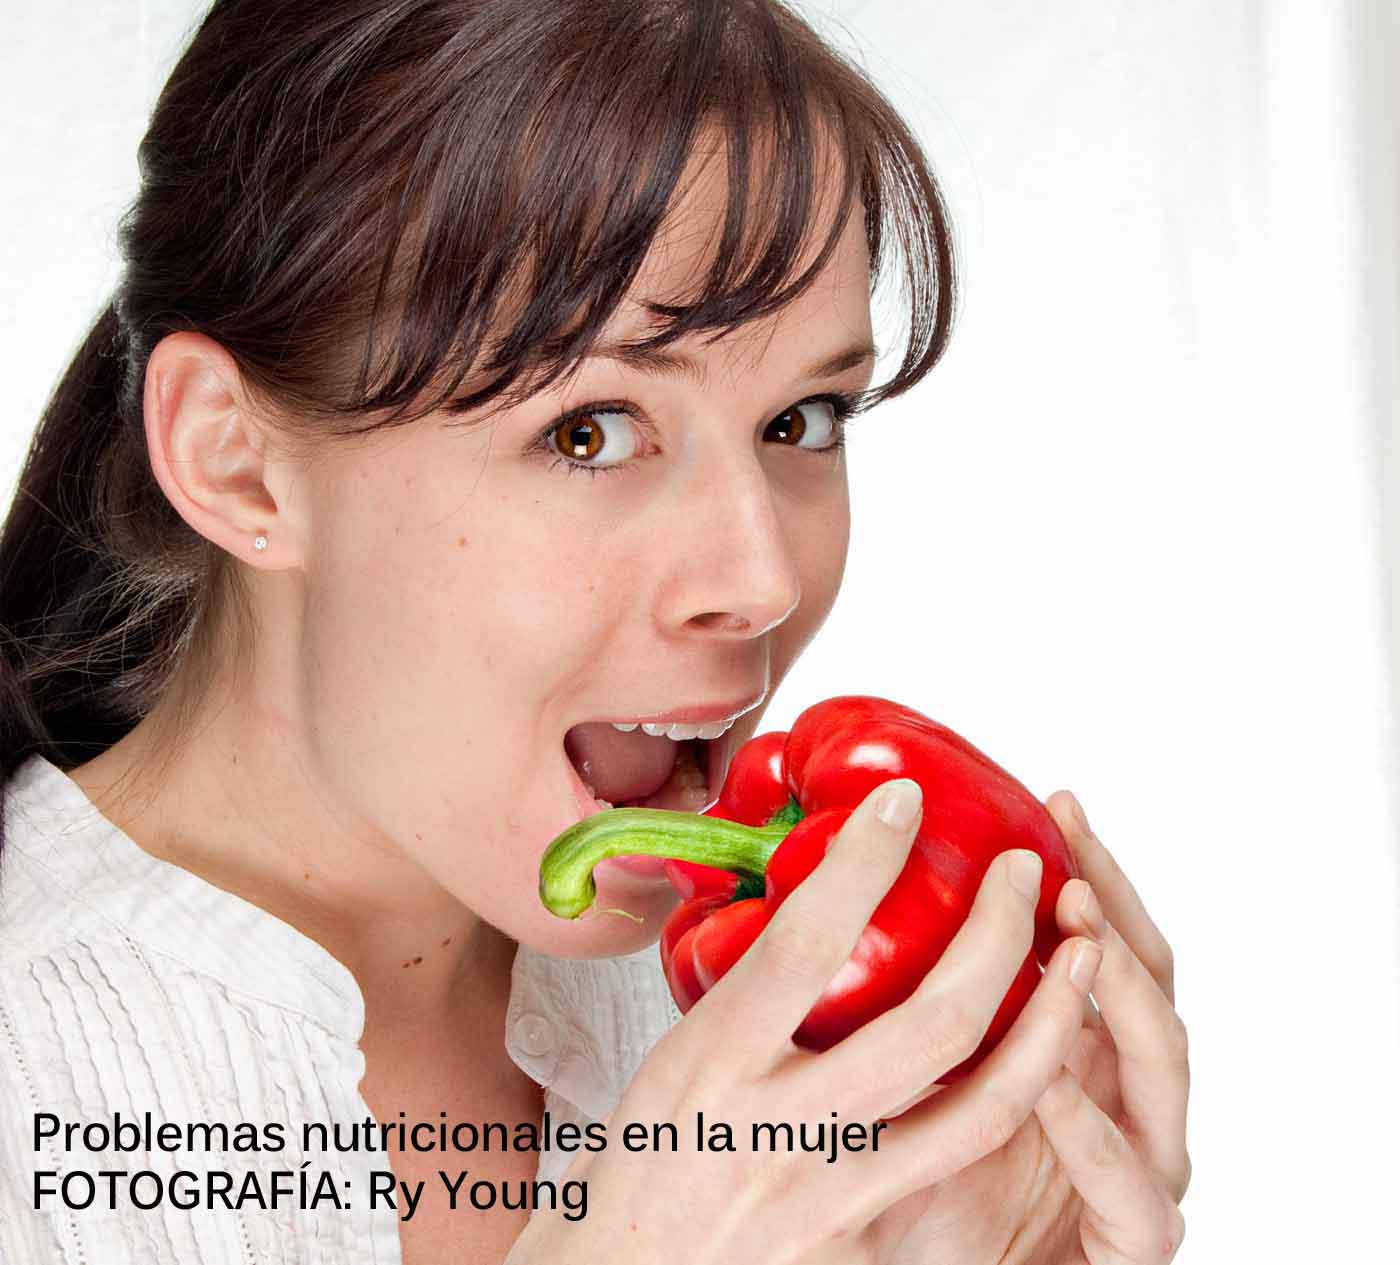 Nutrición y mujer. Algunos problemas nutricionales en la población femenina